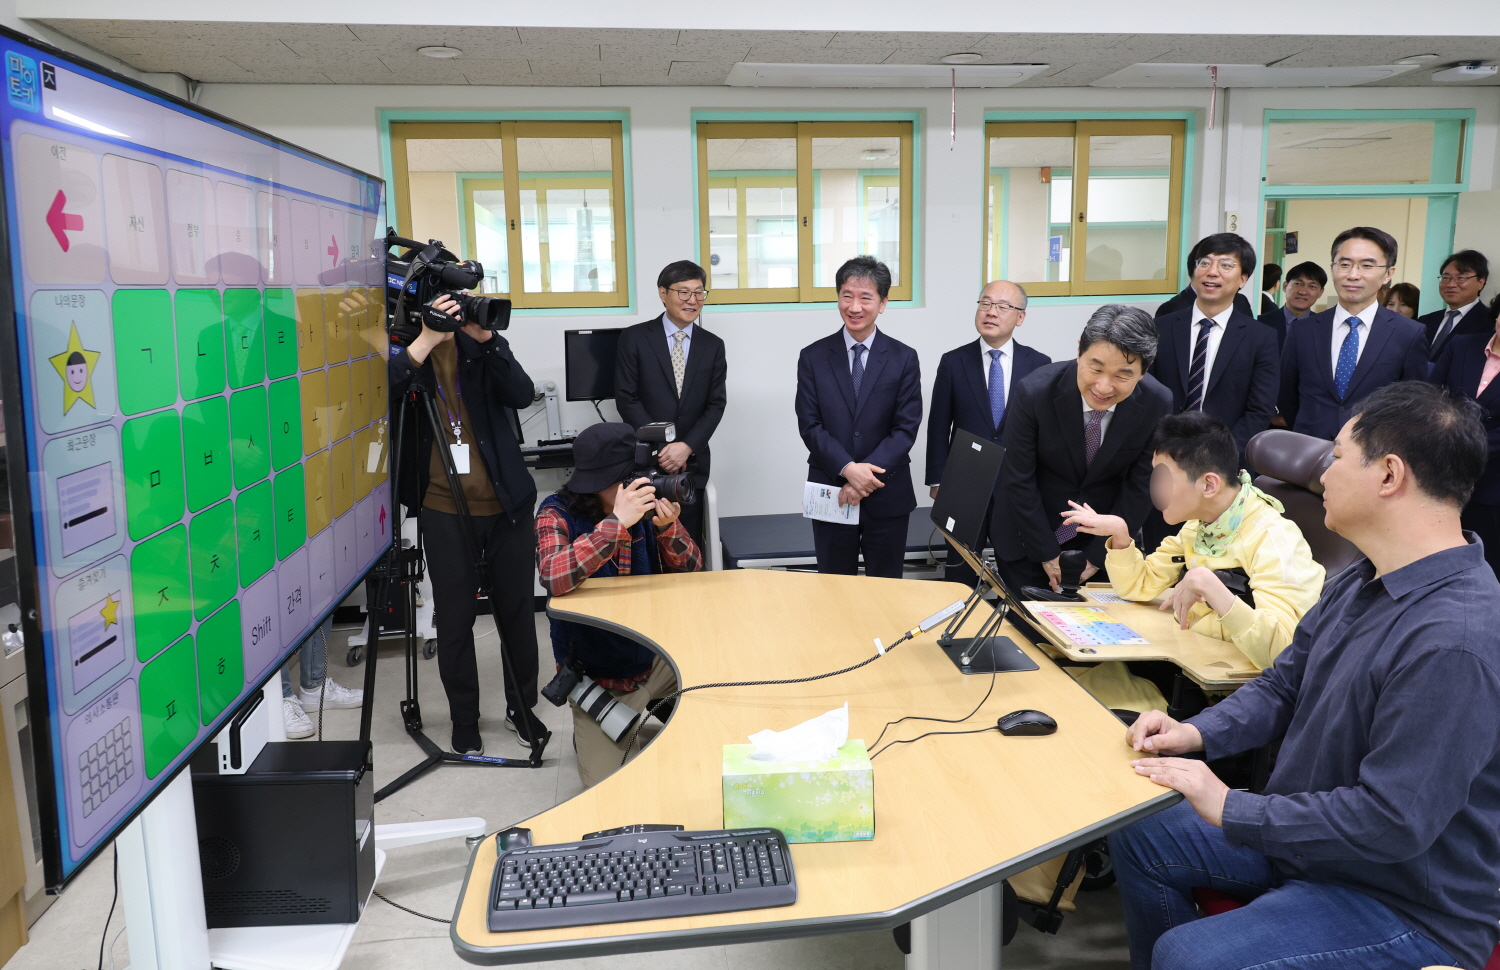 이주호 부총리 겸 교육부장관은 4월 24일(수), 제44회 장애인의 날에 즈음하여 한국우진학교를 방문했다.